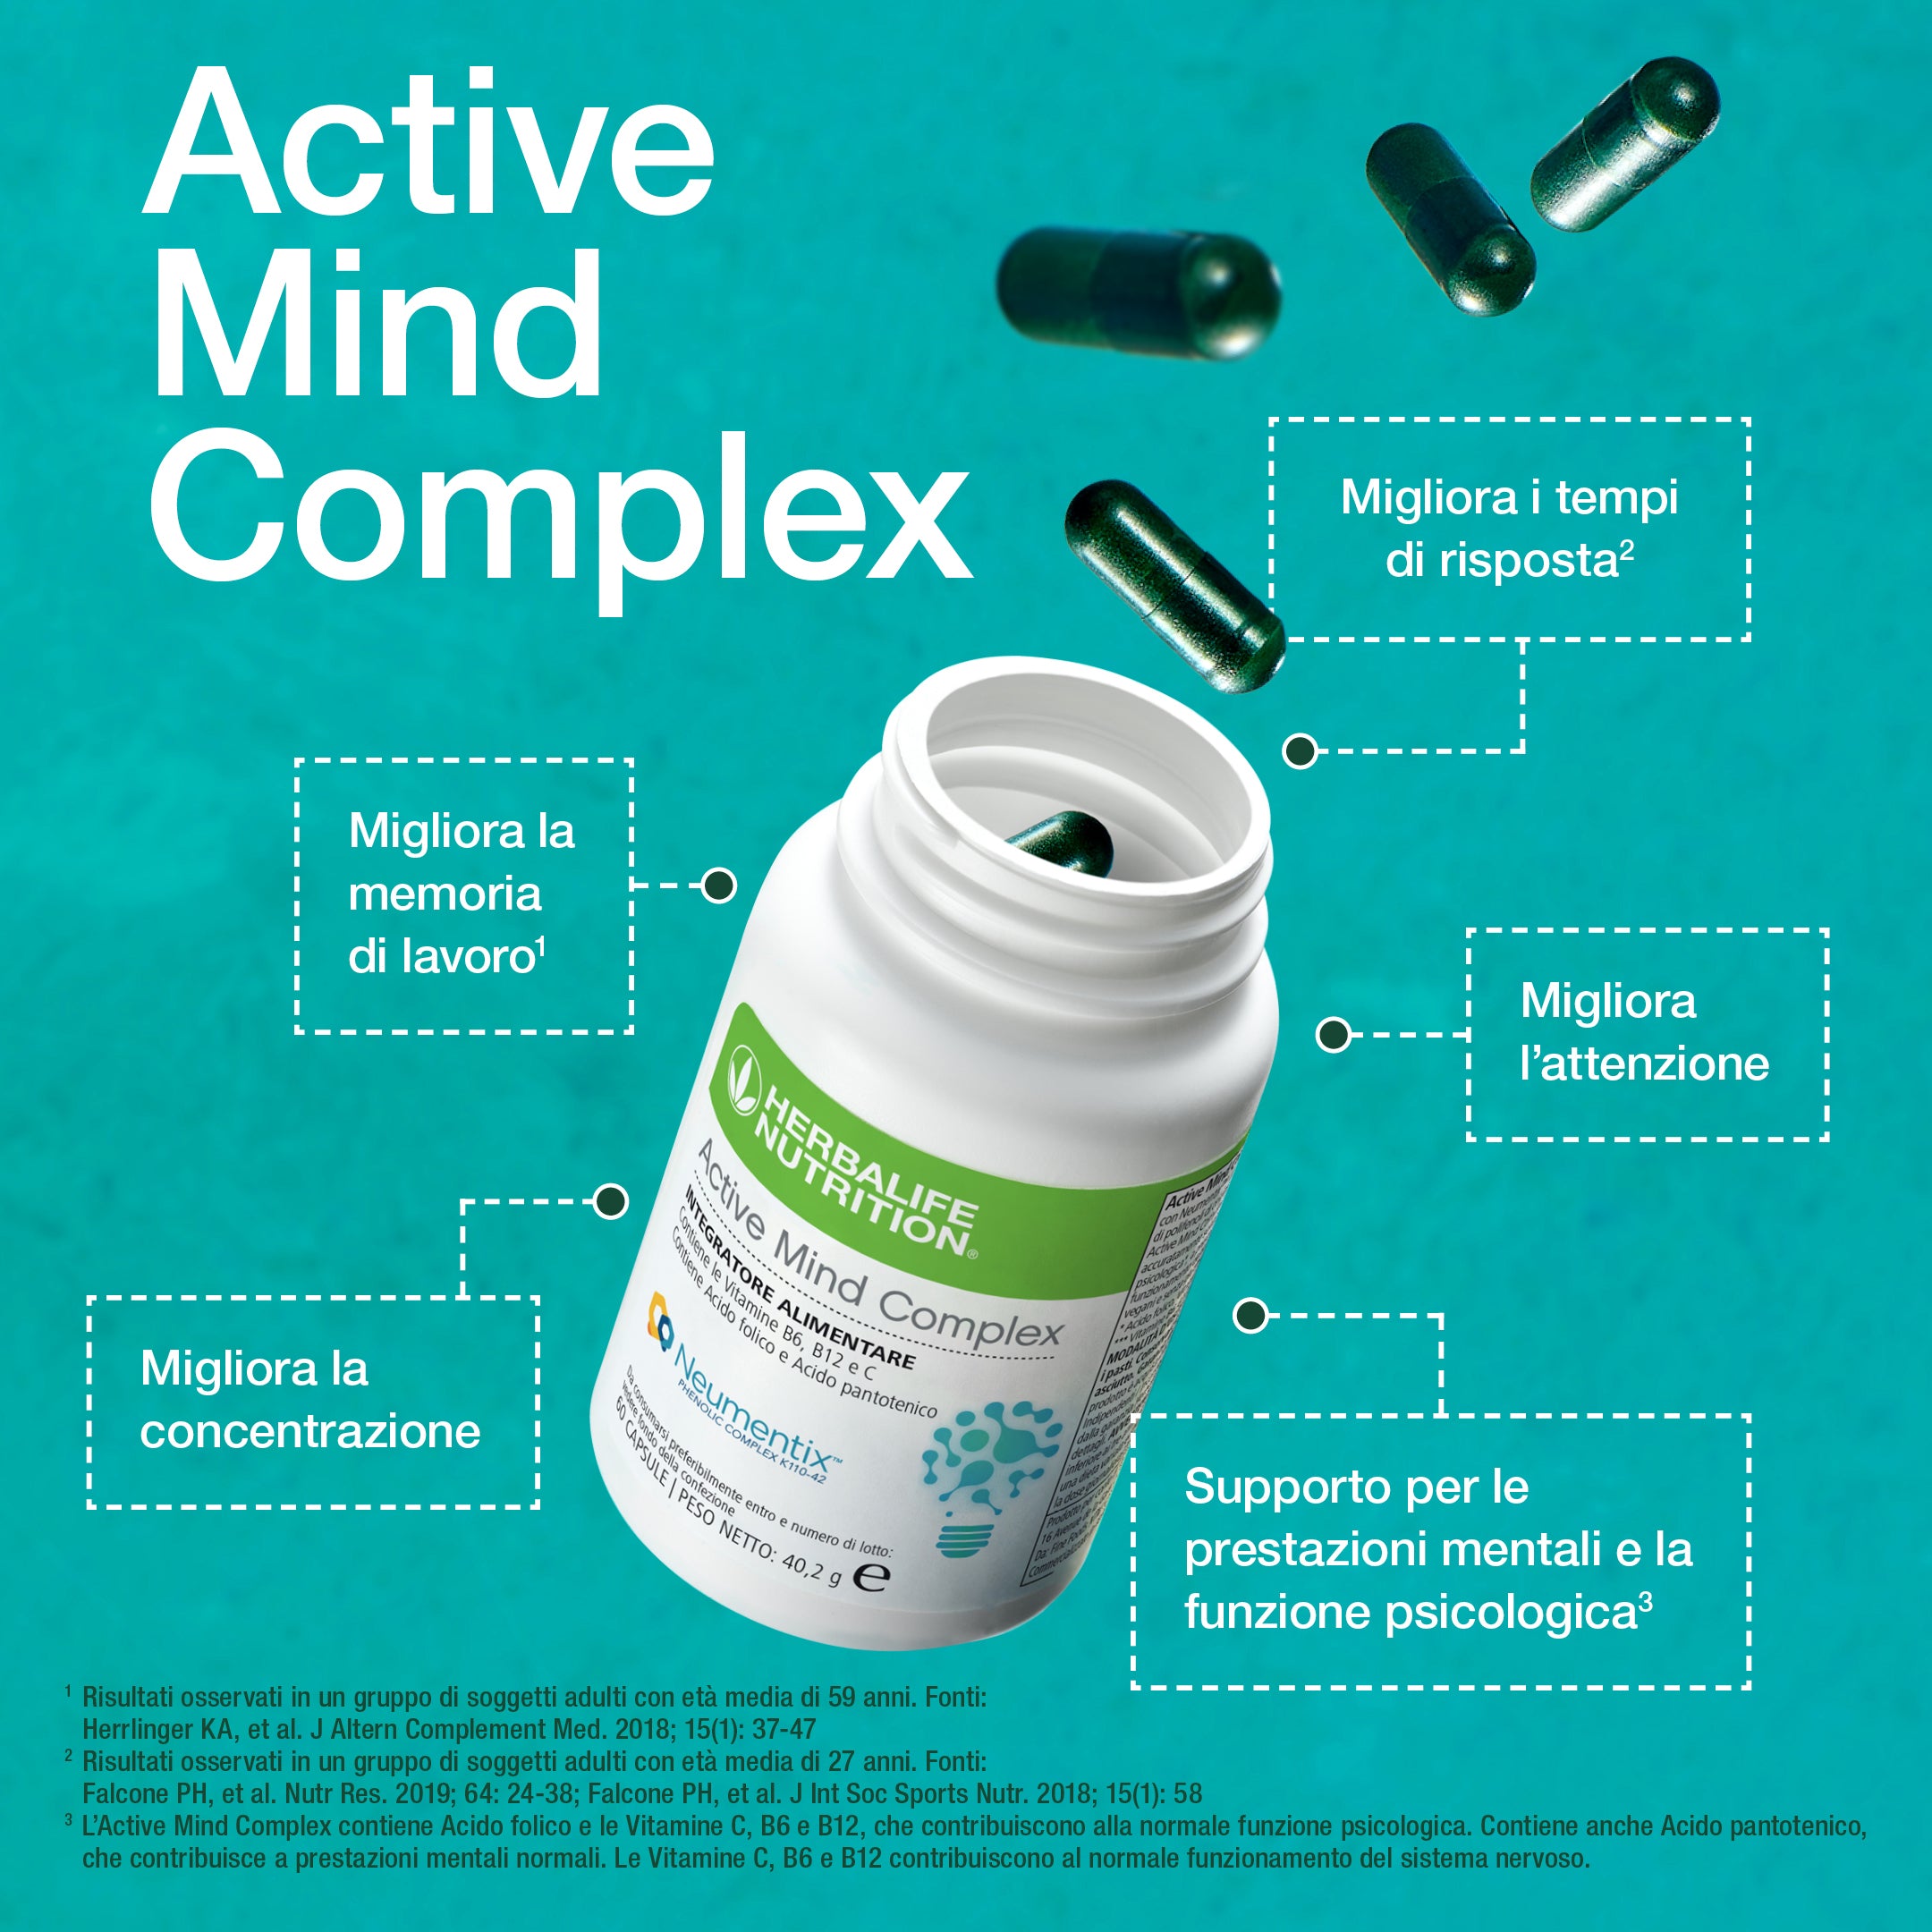 Active Mind Complex